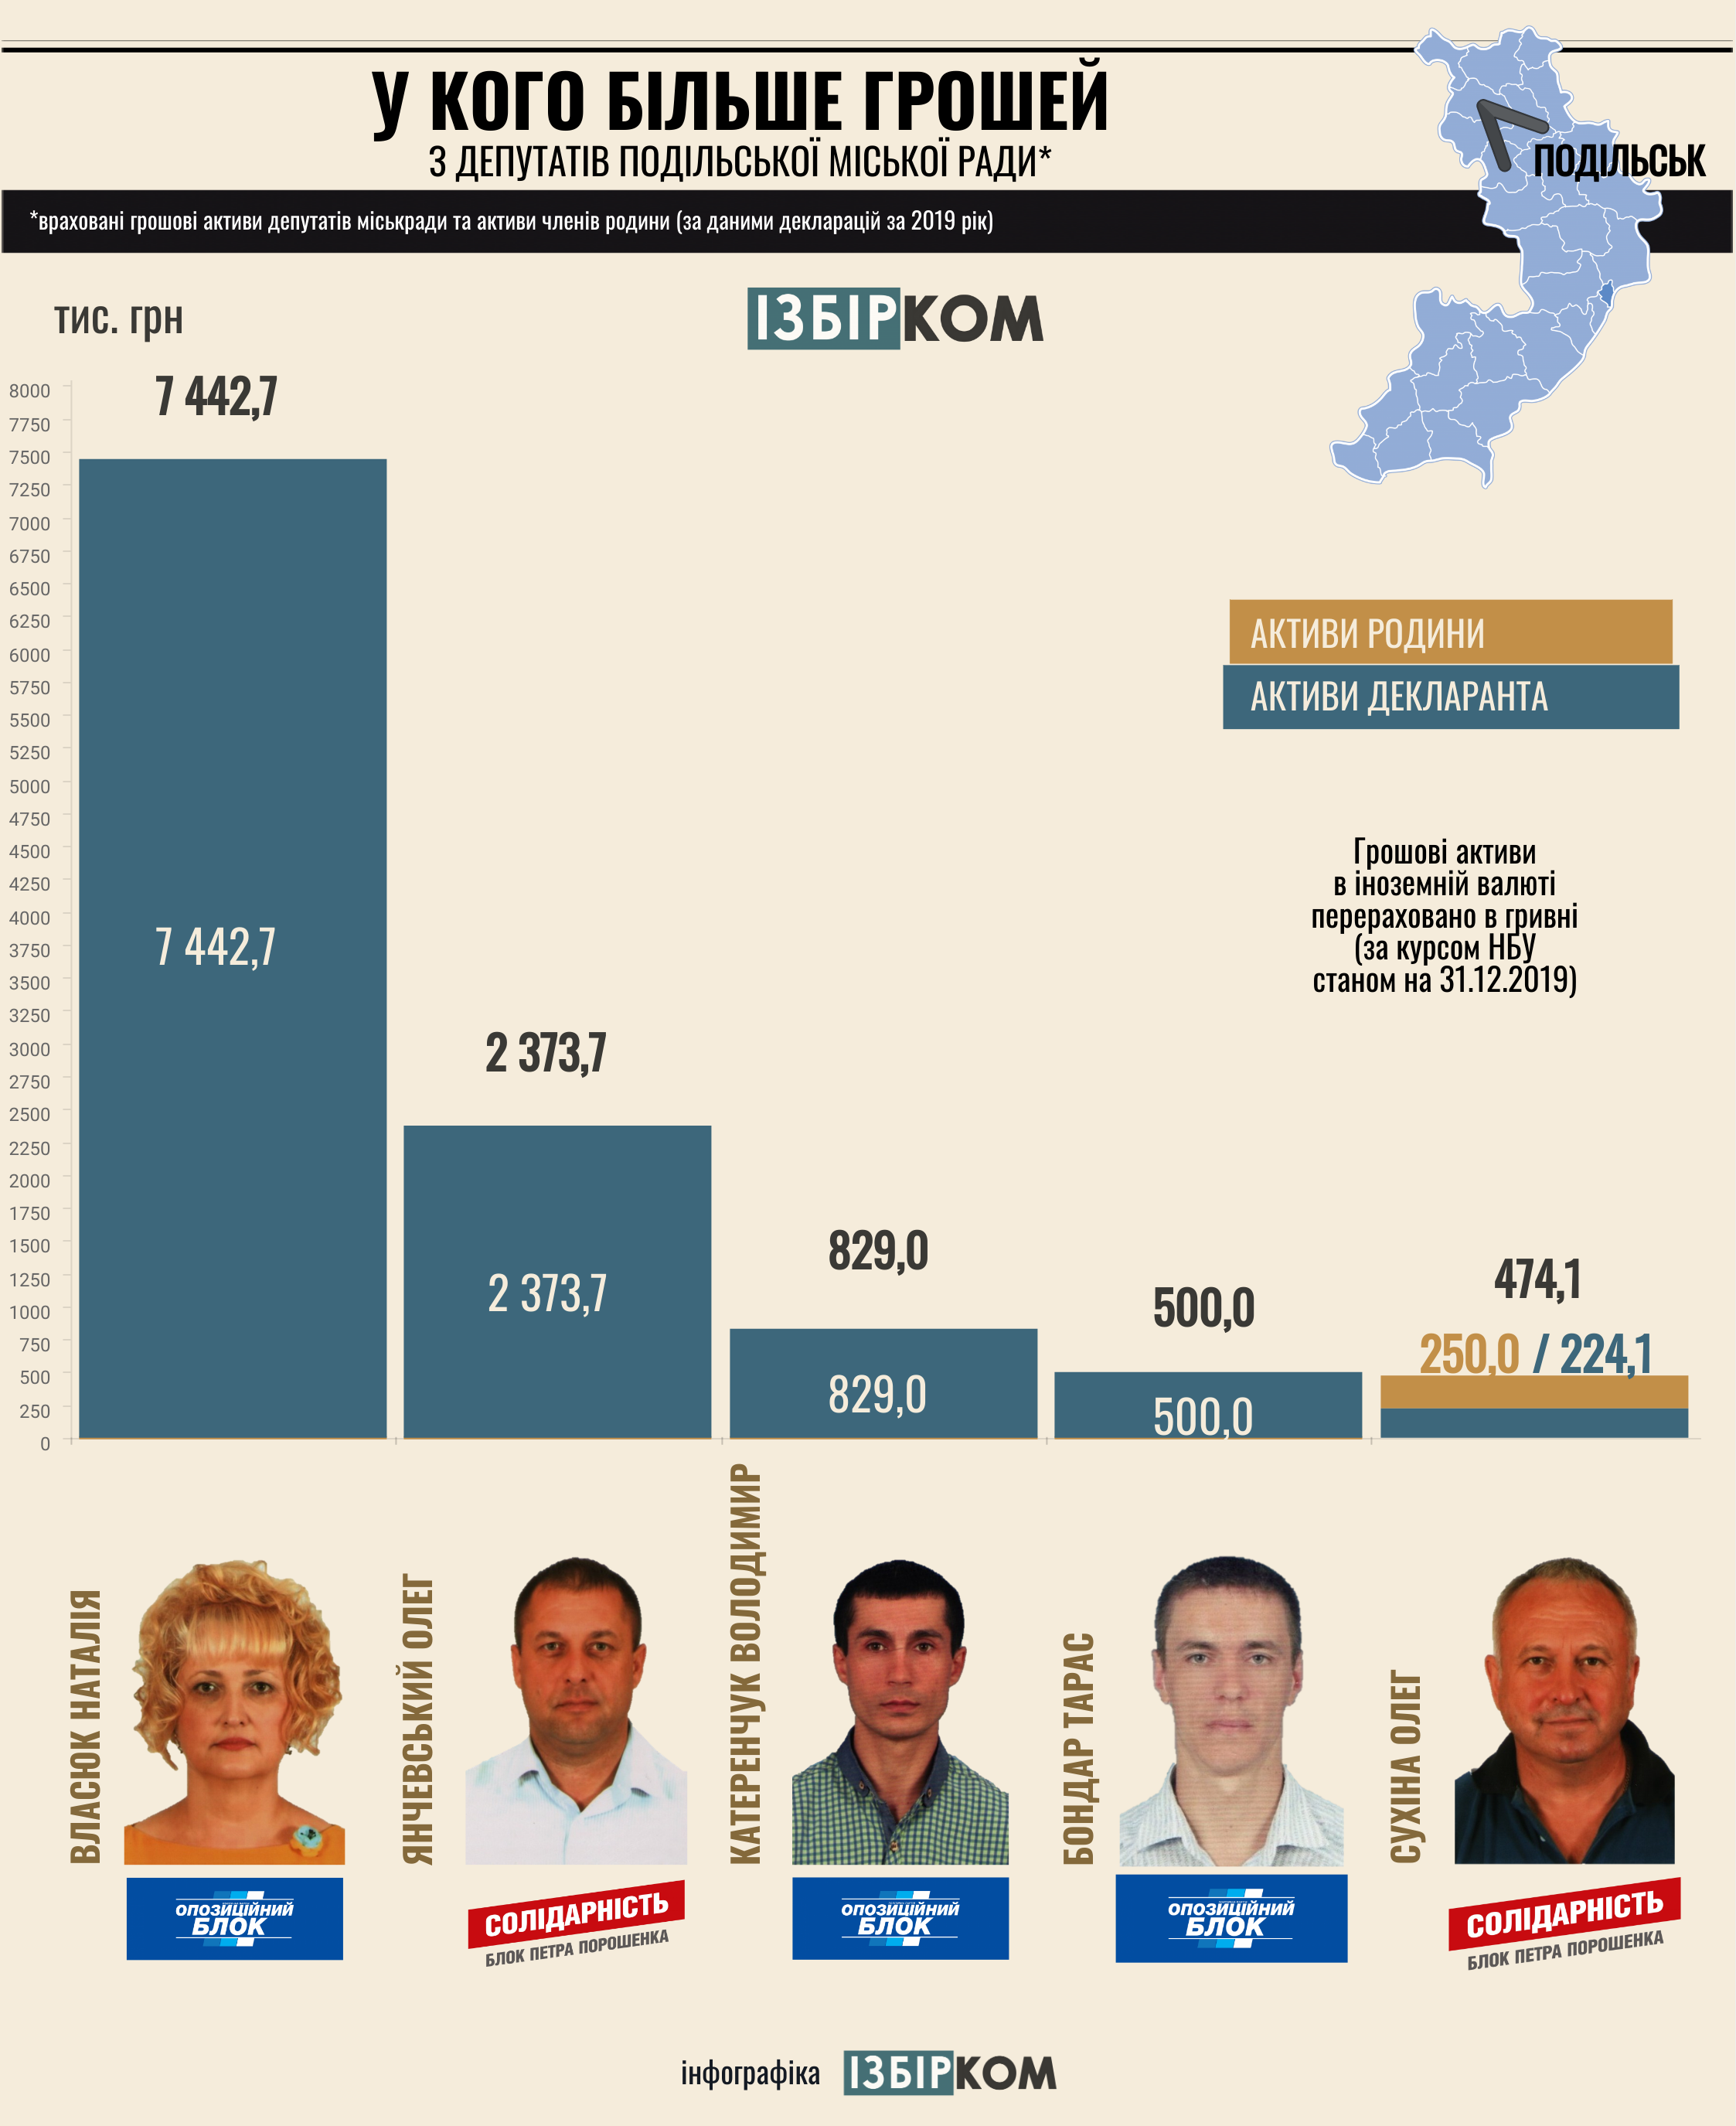 найбагатші депутати Подольська